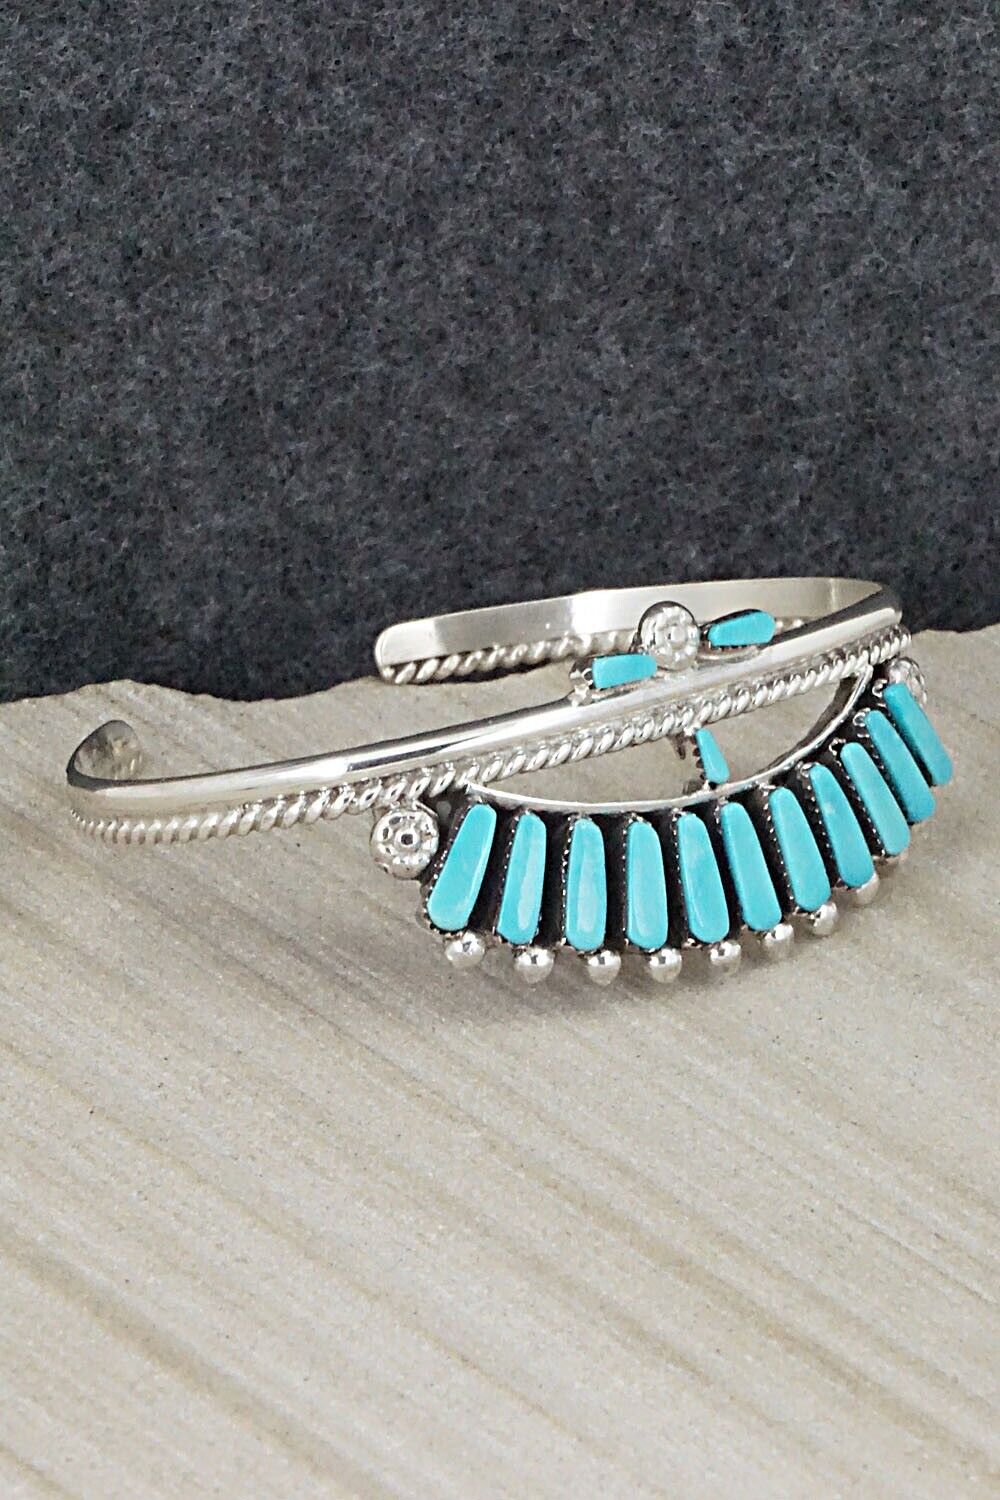 Turquoise & Sterling Silver Bracelet - Carlene Hattie